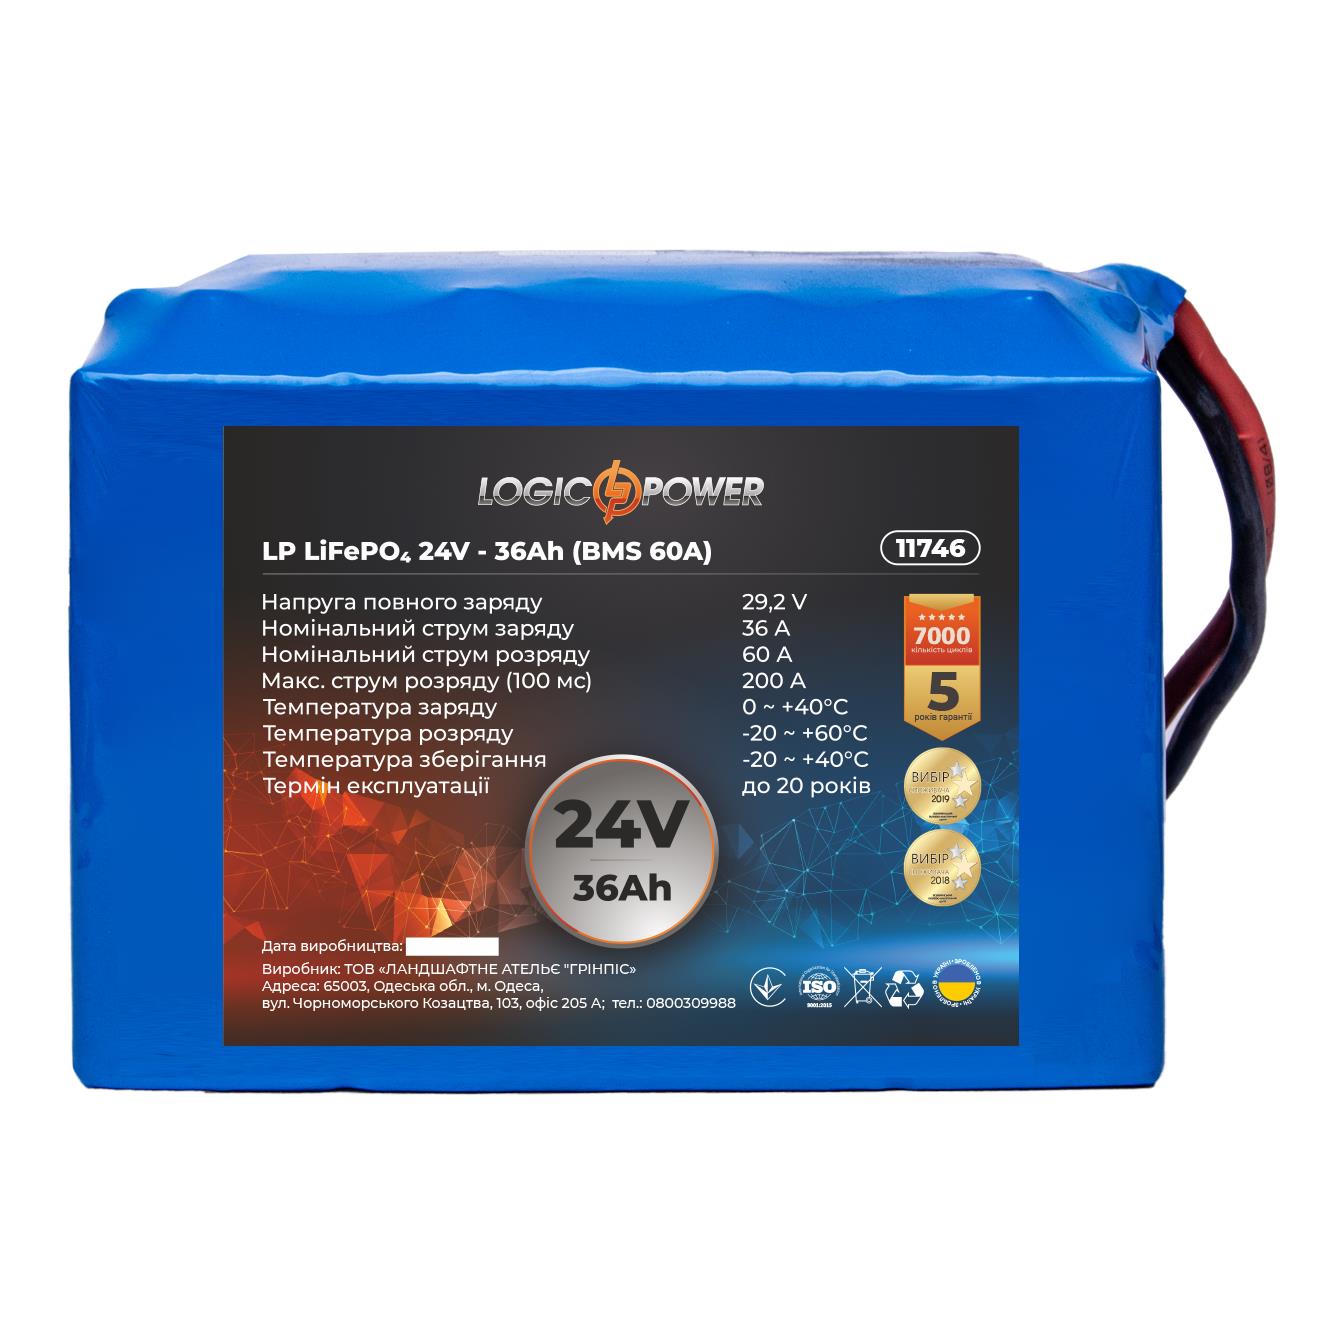 Отзывы аккумулятор литий-железо-фосфатный LogicPower LP LiFePO4 24V - 36 Ah (BMS 60A) (11746)